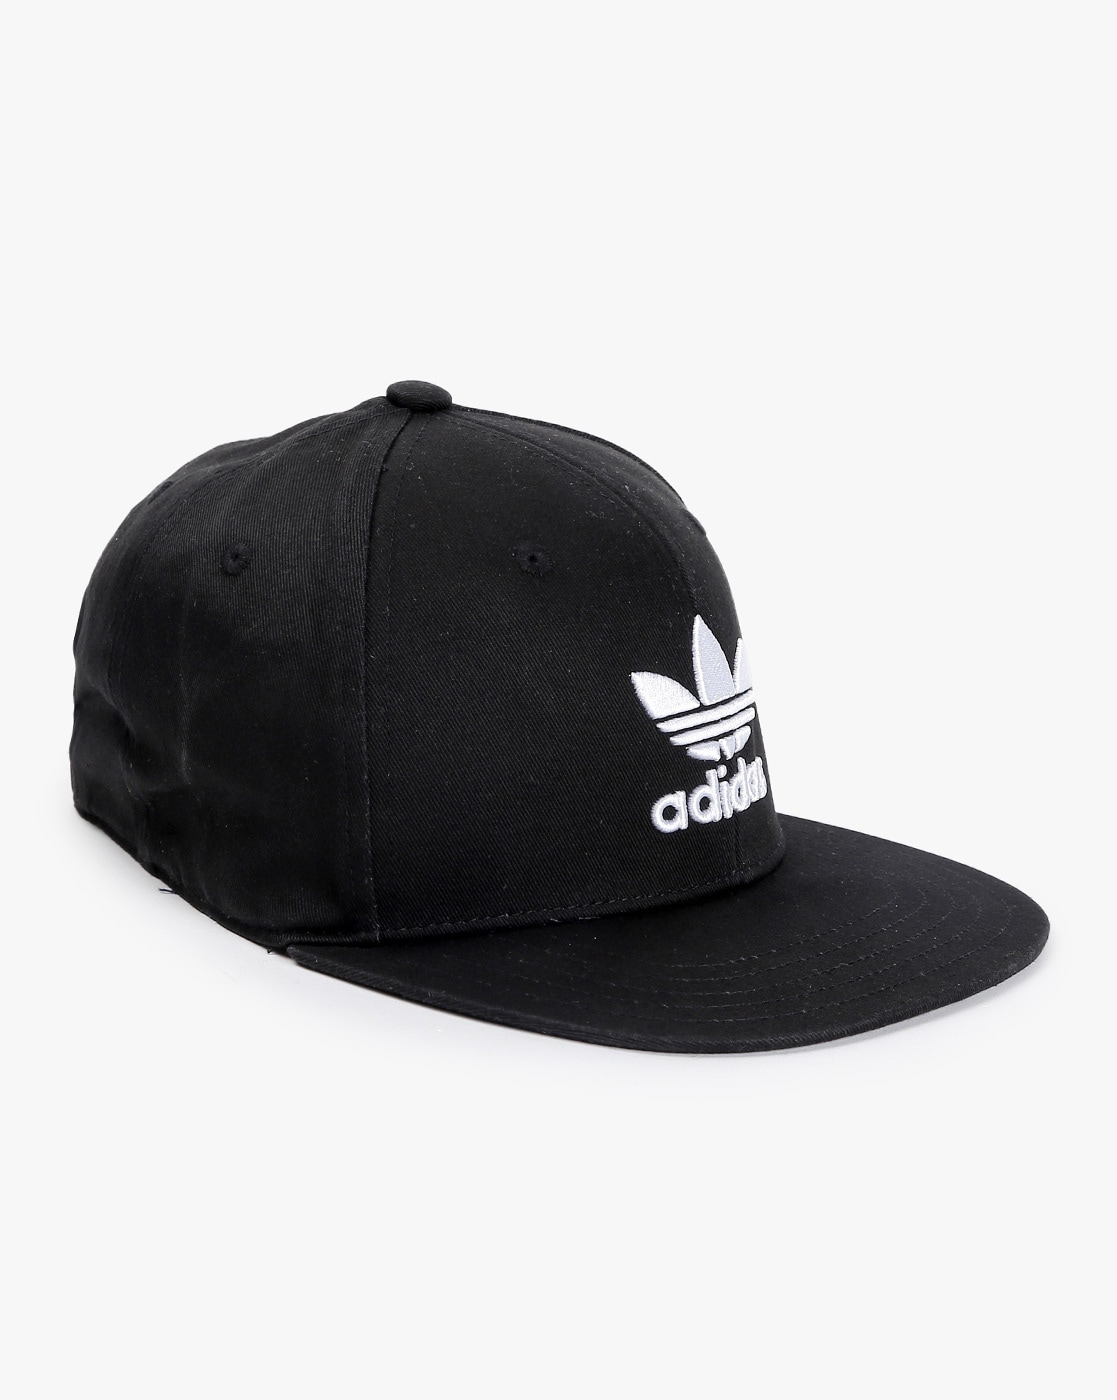 Caps \u0026 Hats for Men by Adidas Originals 